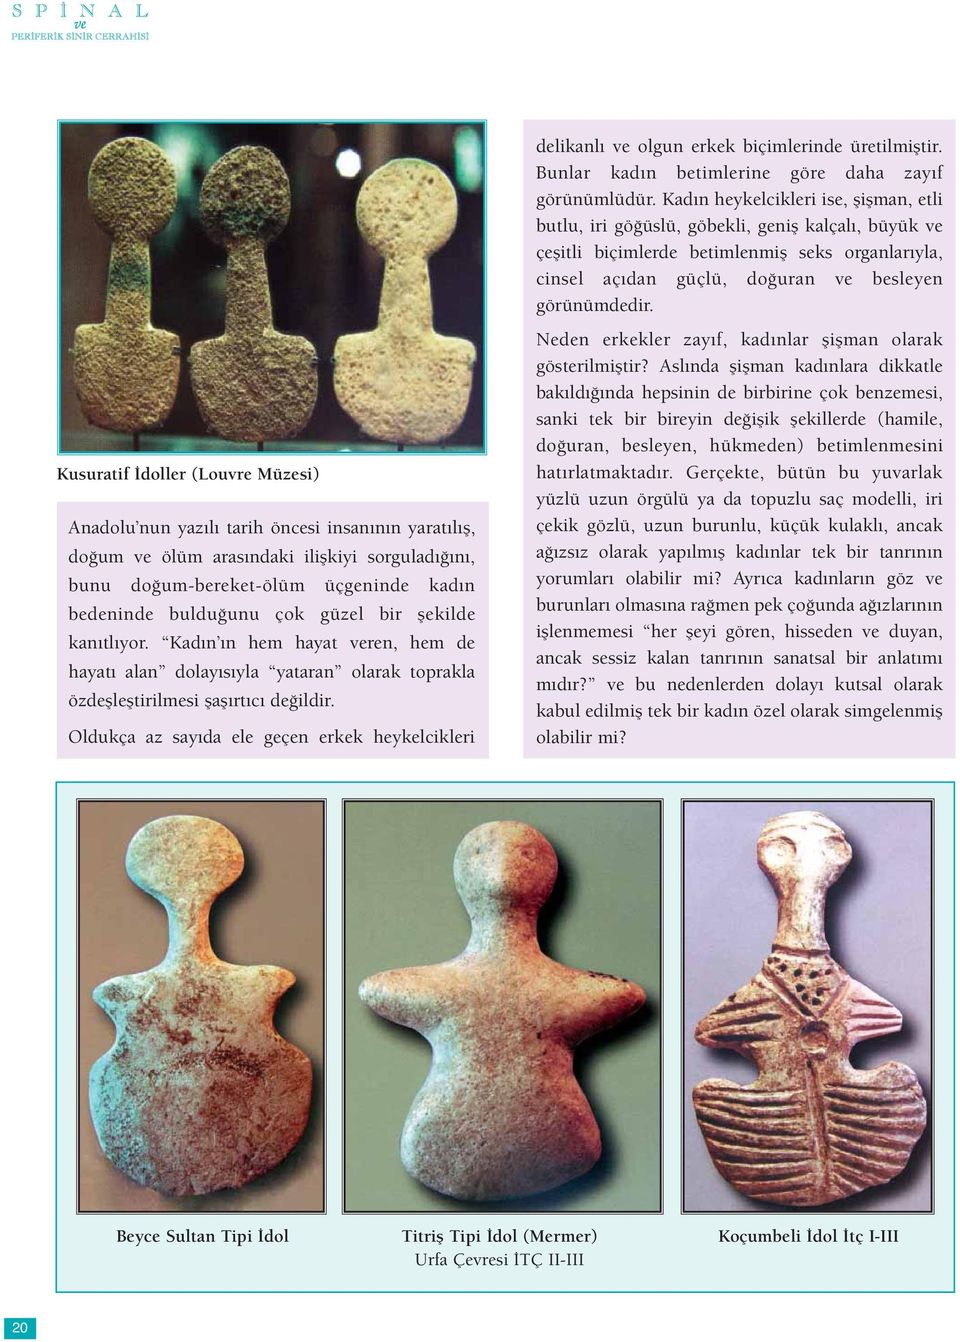 Kusuratif İdoller (Louvre Müzesi) Anadolu nun yazılı tarih öncesi insanının yaratılış, doğum ve ölüm arasındaki ilişkiyi sorguladığını, bunu doğum-bereket-ölüm üçgeninde kadın bedeninde bulduğunu çok